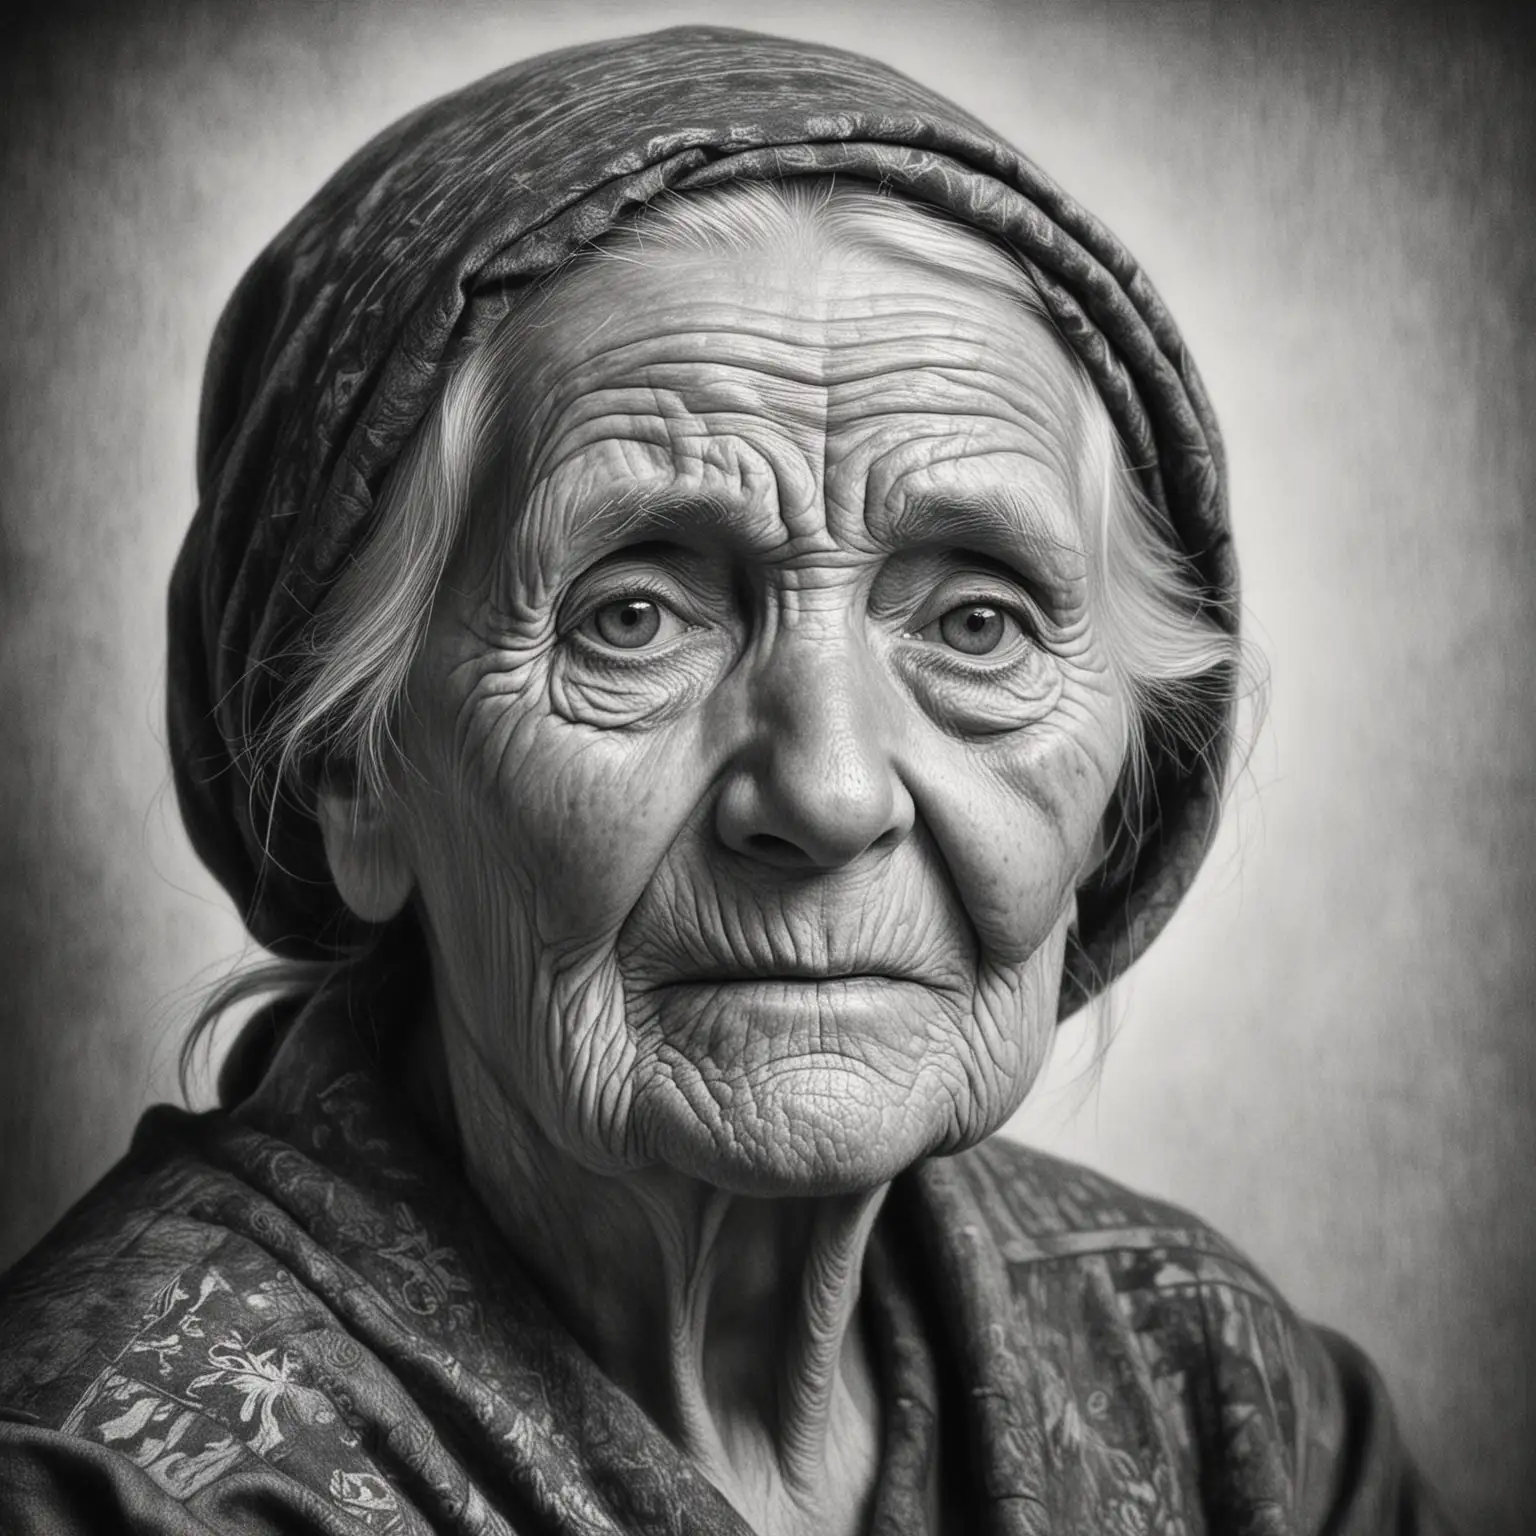 Elderly Woman Portrait Sketch in Monochrome Pencil